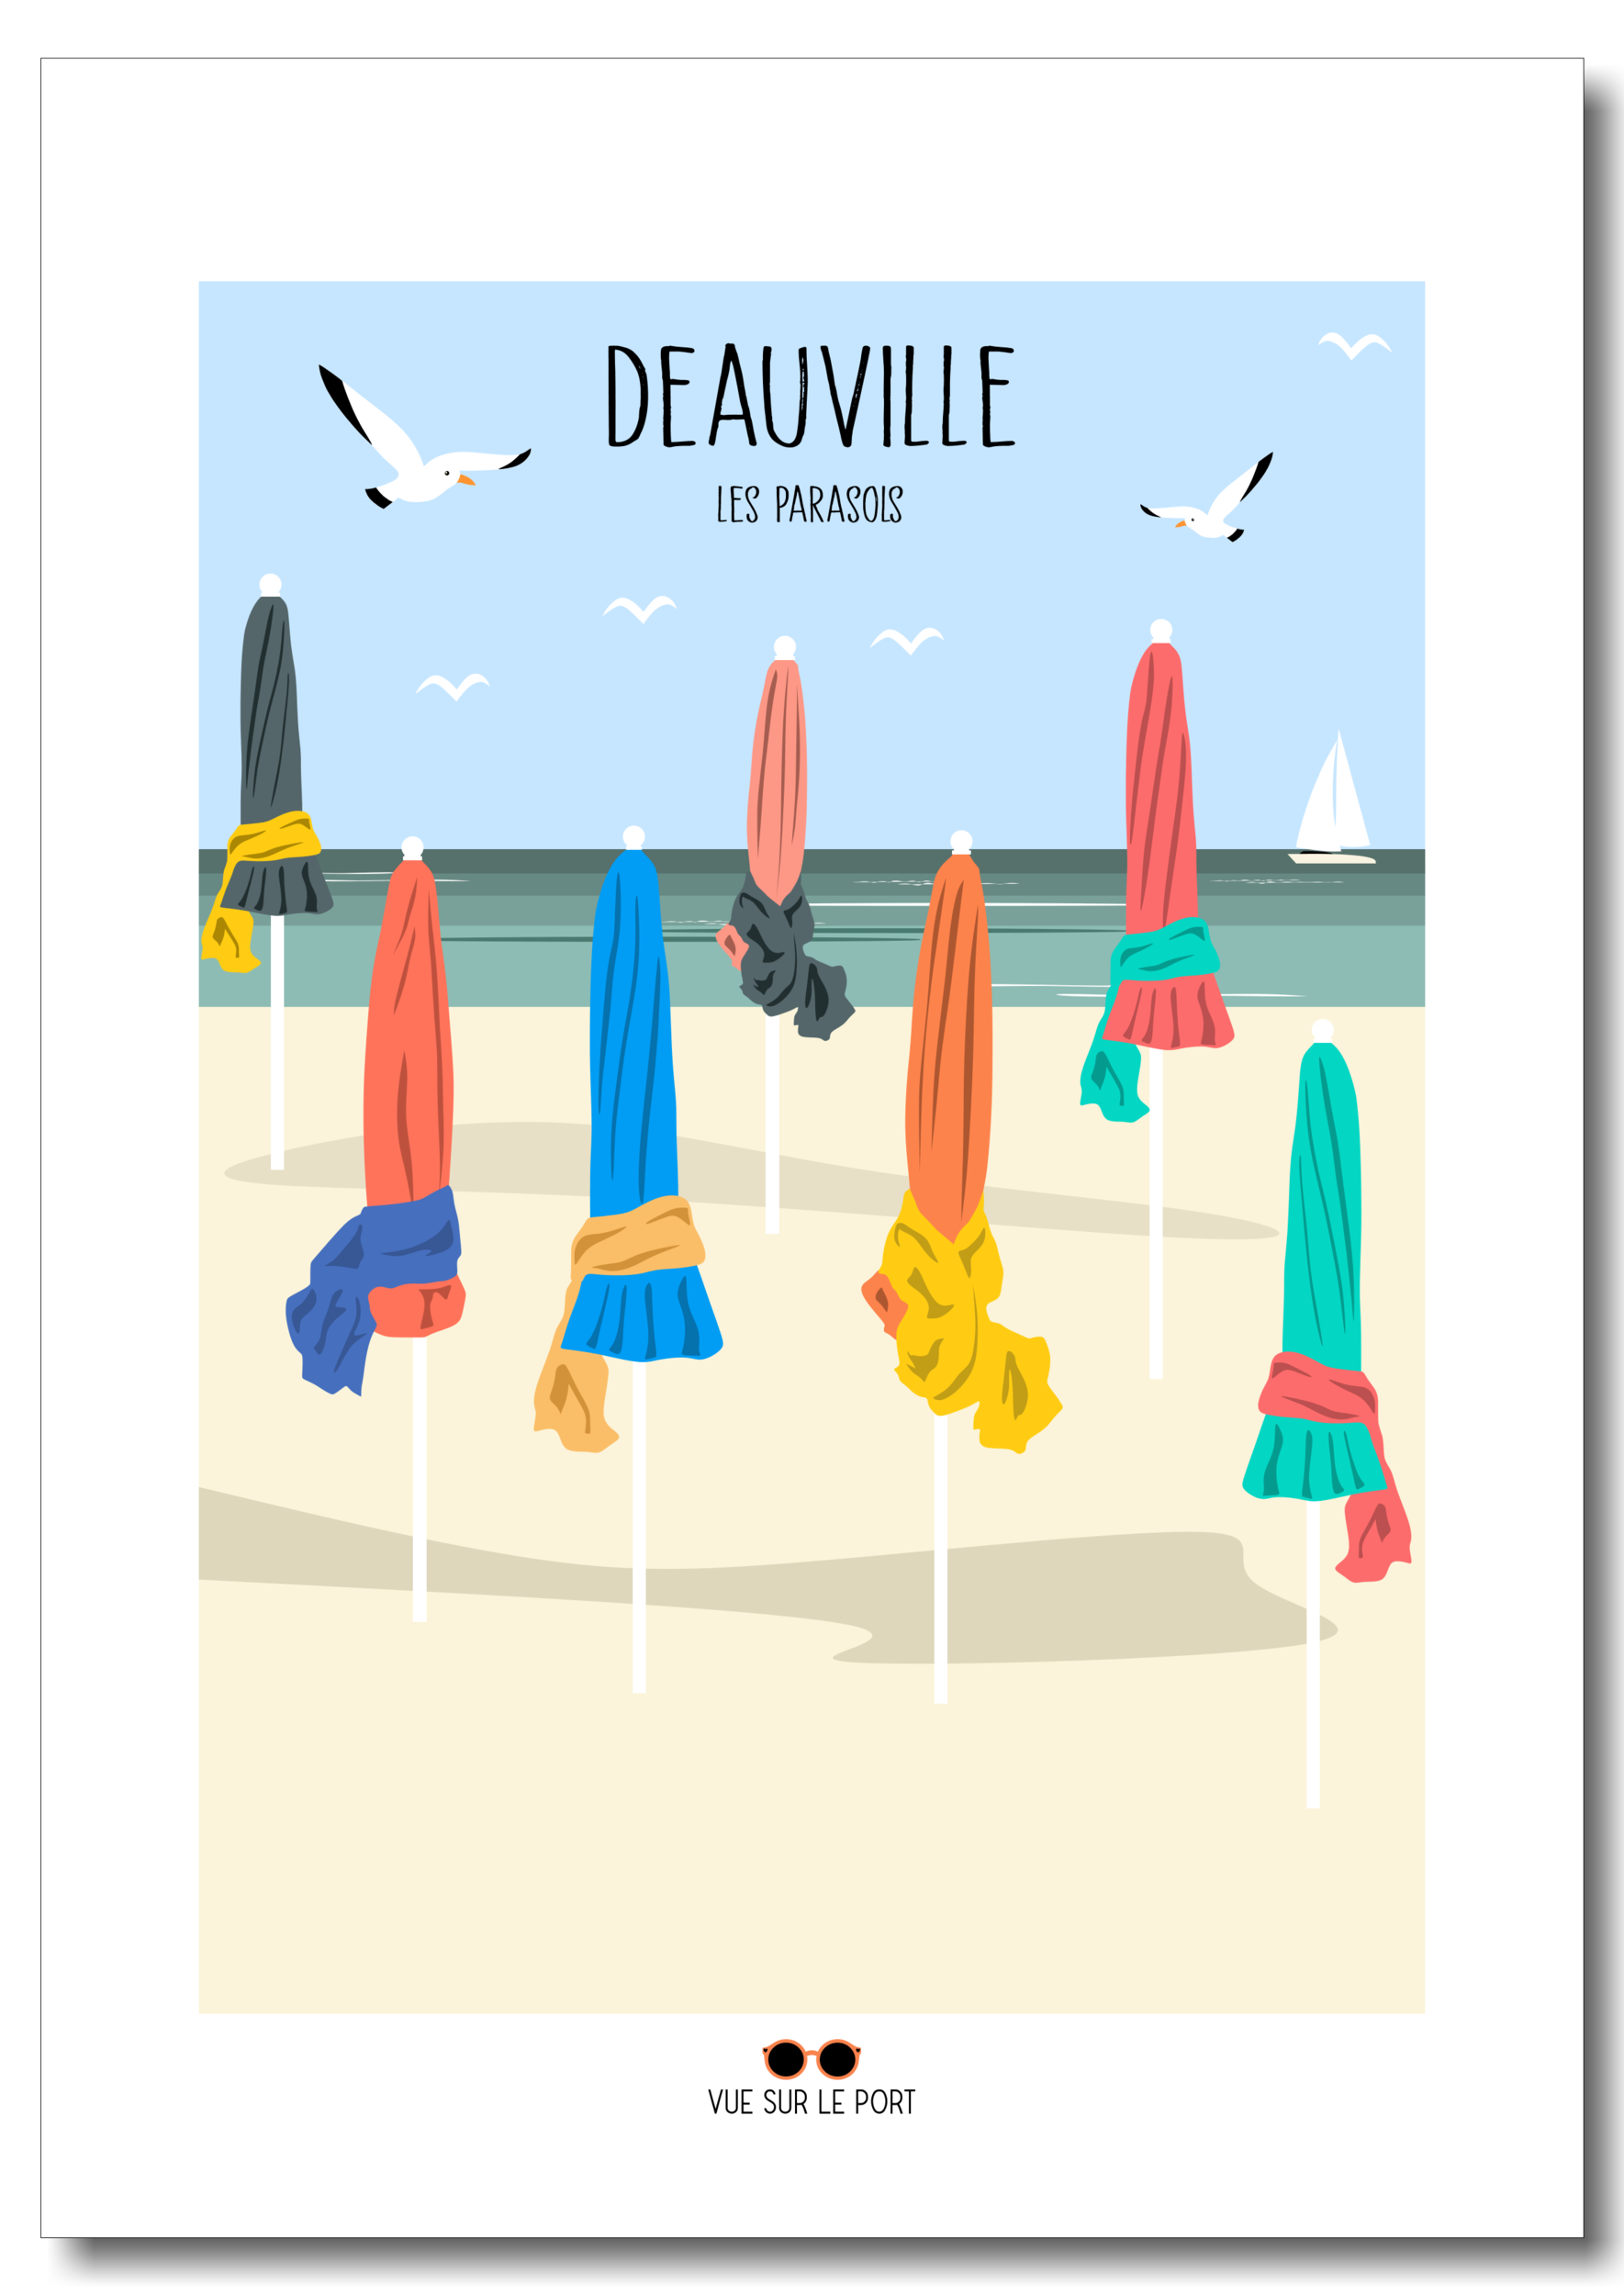 Deauville etsy